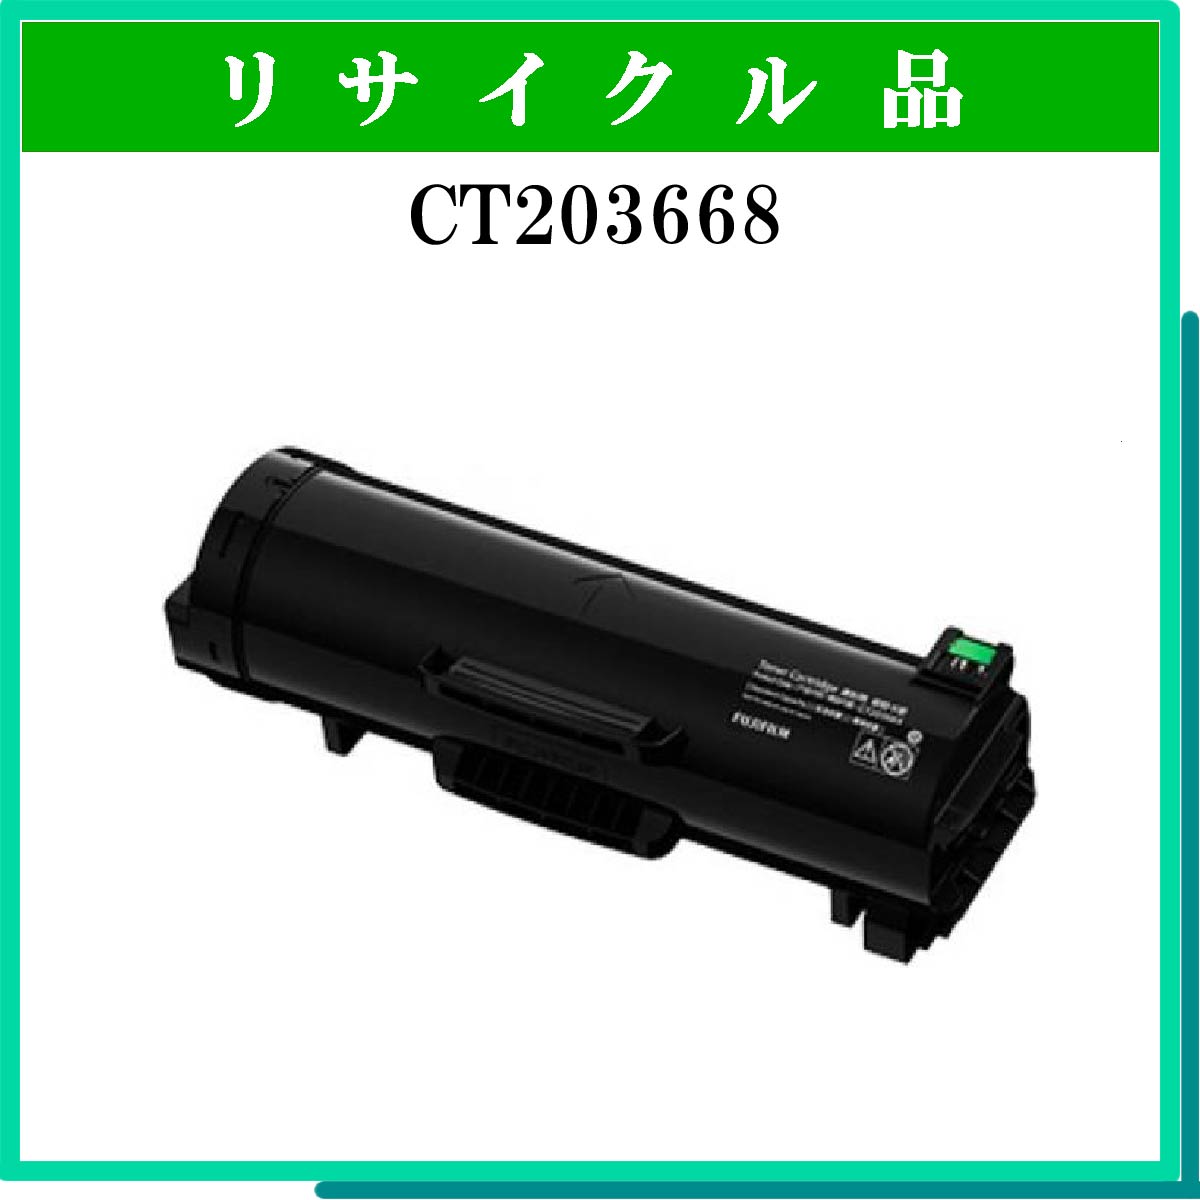 SP ﾄﾅｰ C710 ｼｱﾝ